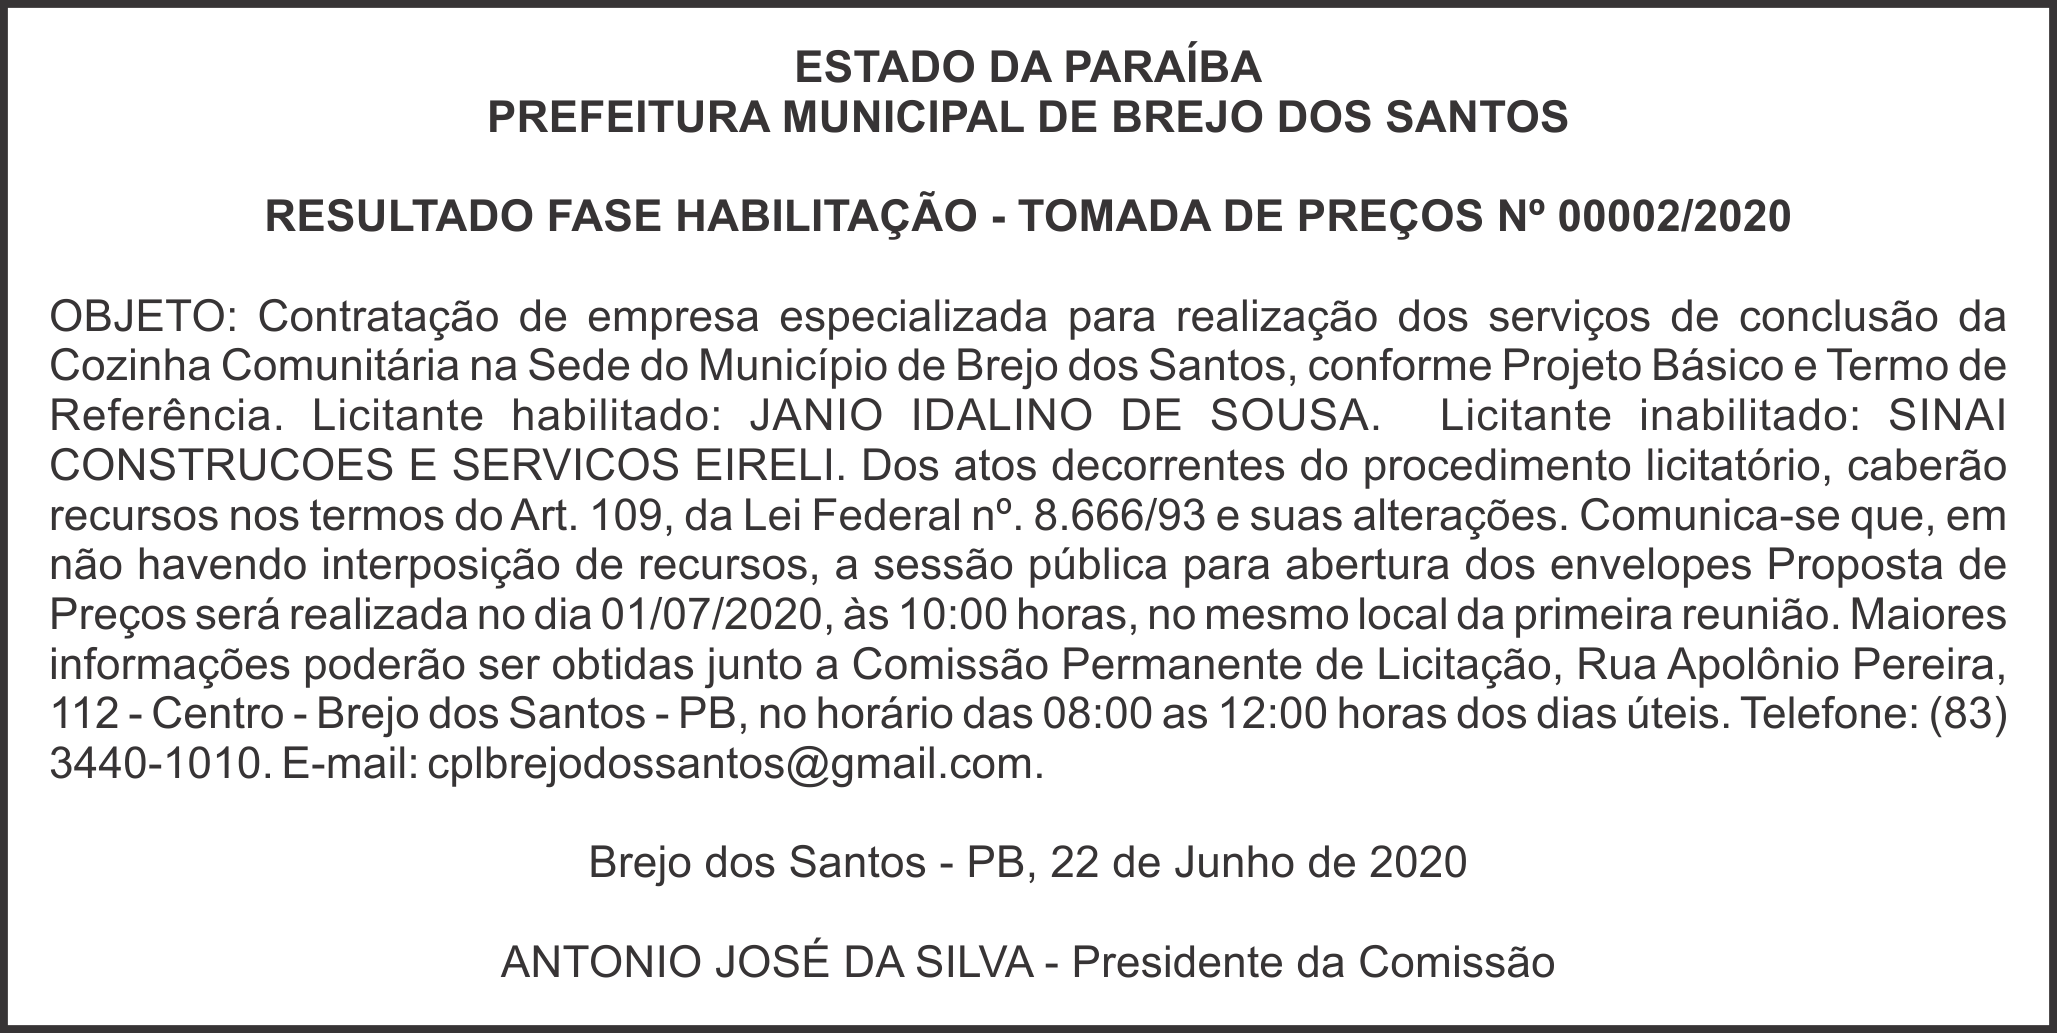 PREFEITURA MUNICIPAL DE BREJO DOS SANTOS – RESULTADO FASE HABILITAÇÃO – TOMADA DE PREÇOS Nº 00002/2020